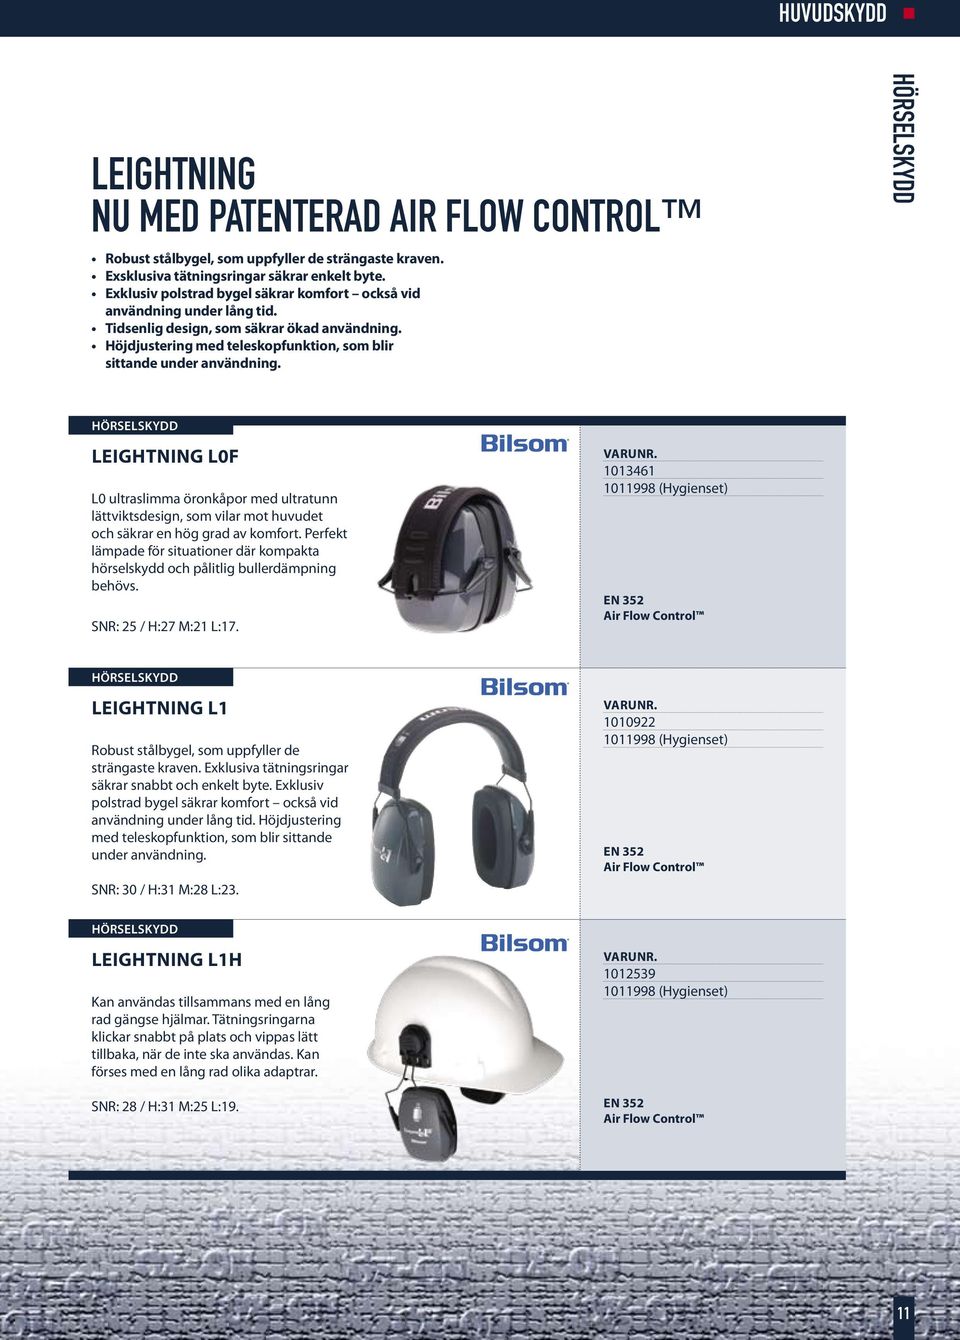 LEIGHTNING L0F L0 ultraslimma öronkåpor med ultratunn lättviktsdesign, som vilar mot huvudet och säkrar en hög grad av komfort.